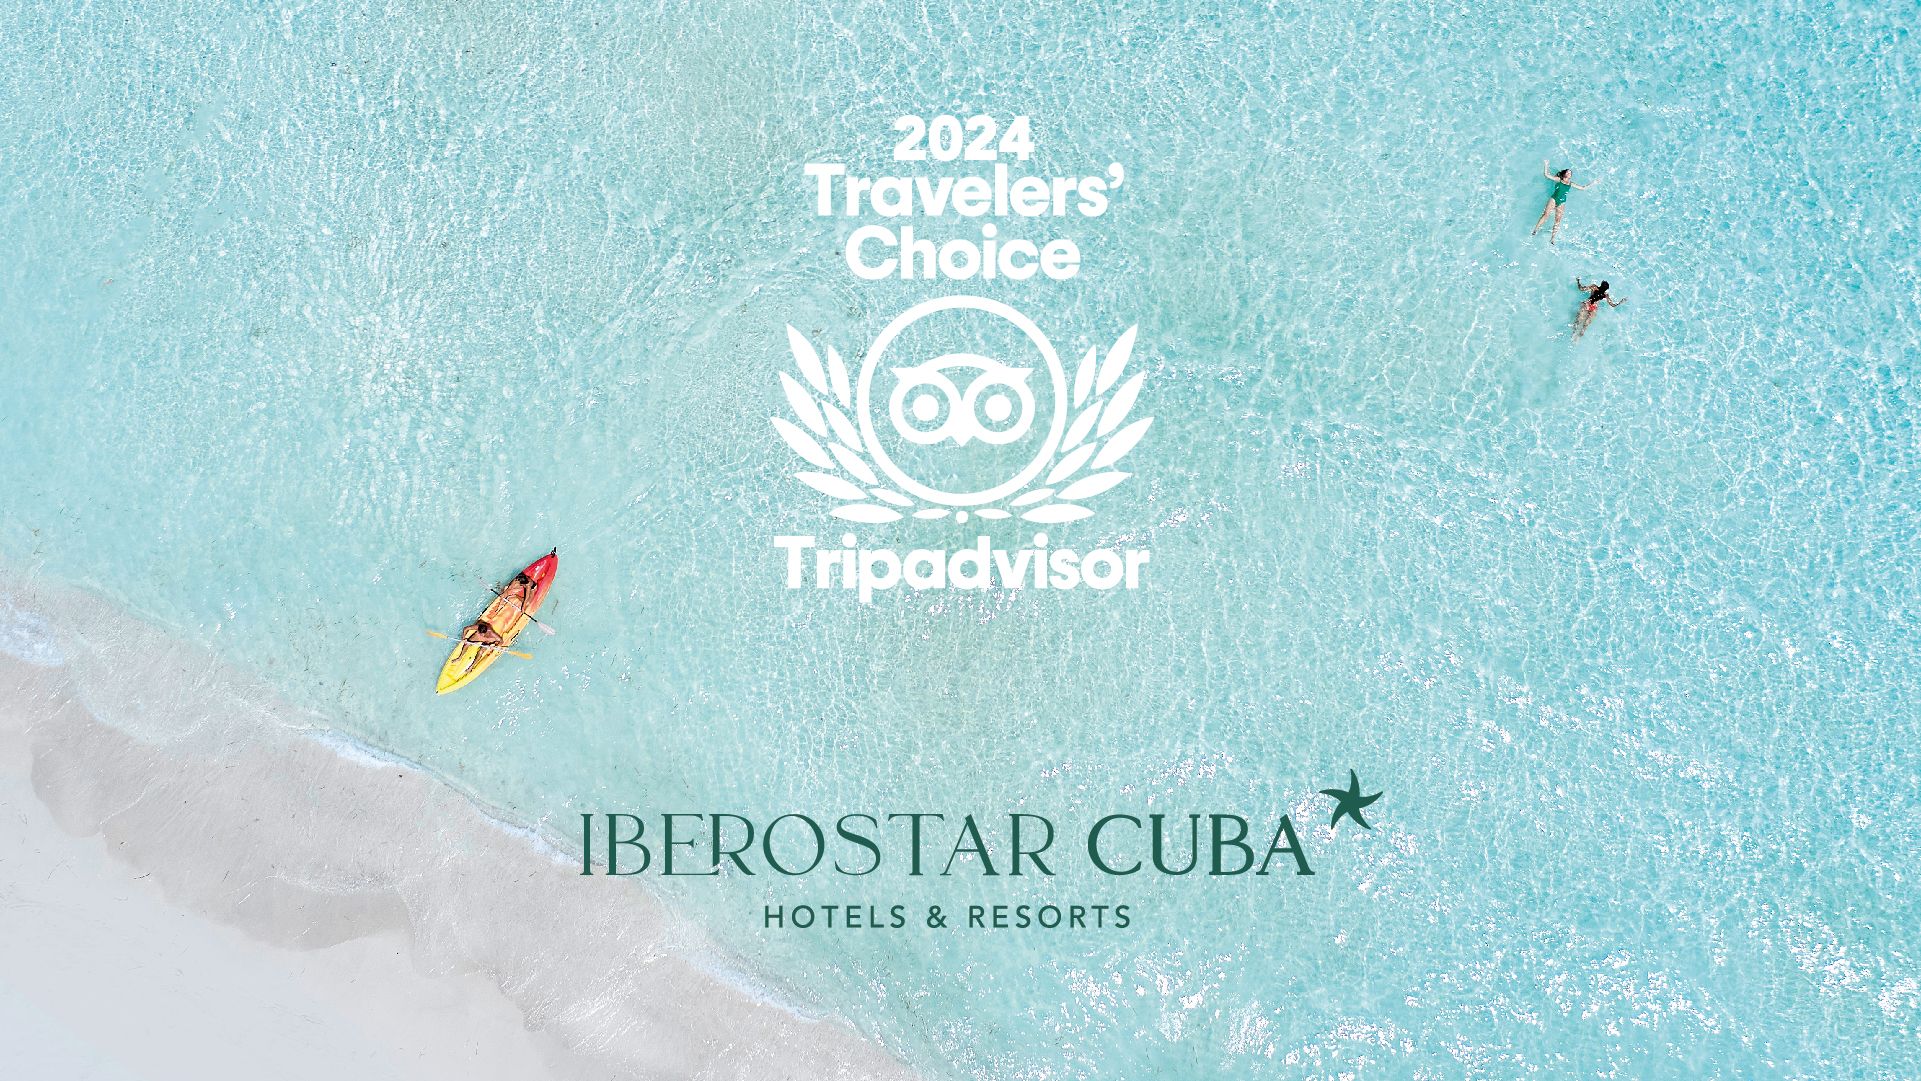 Hoteles de Iberostar Cuba obtienen reconocimiento de excelencia en los premios Travellers´ Choice 2024